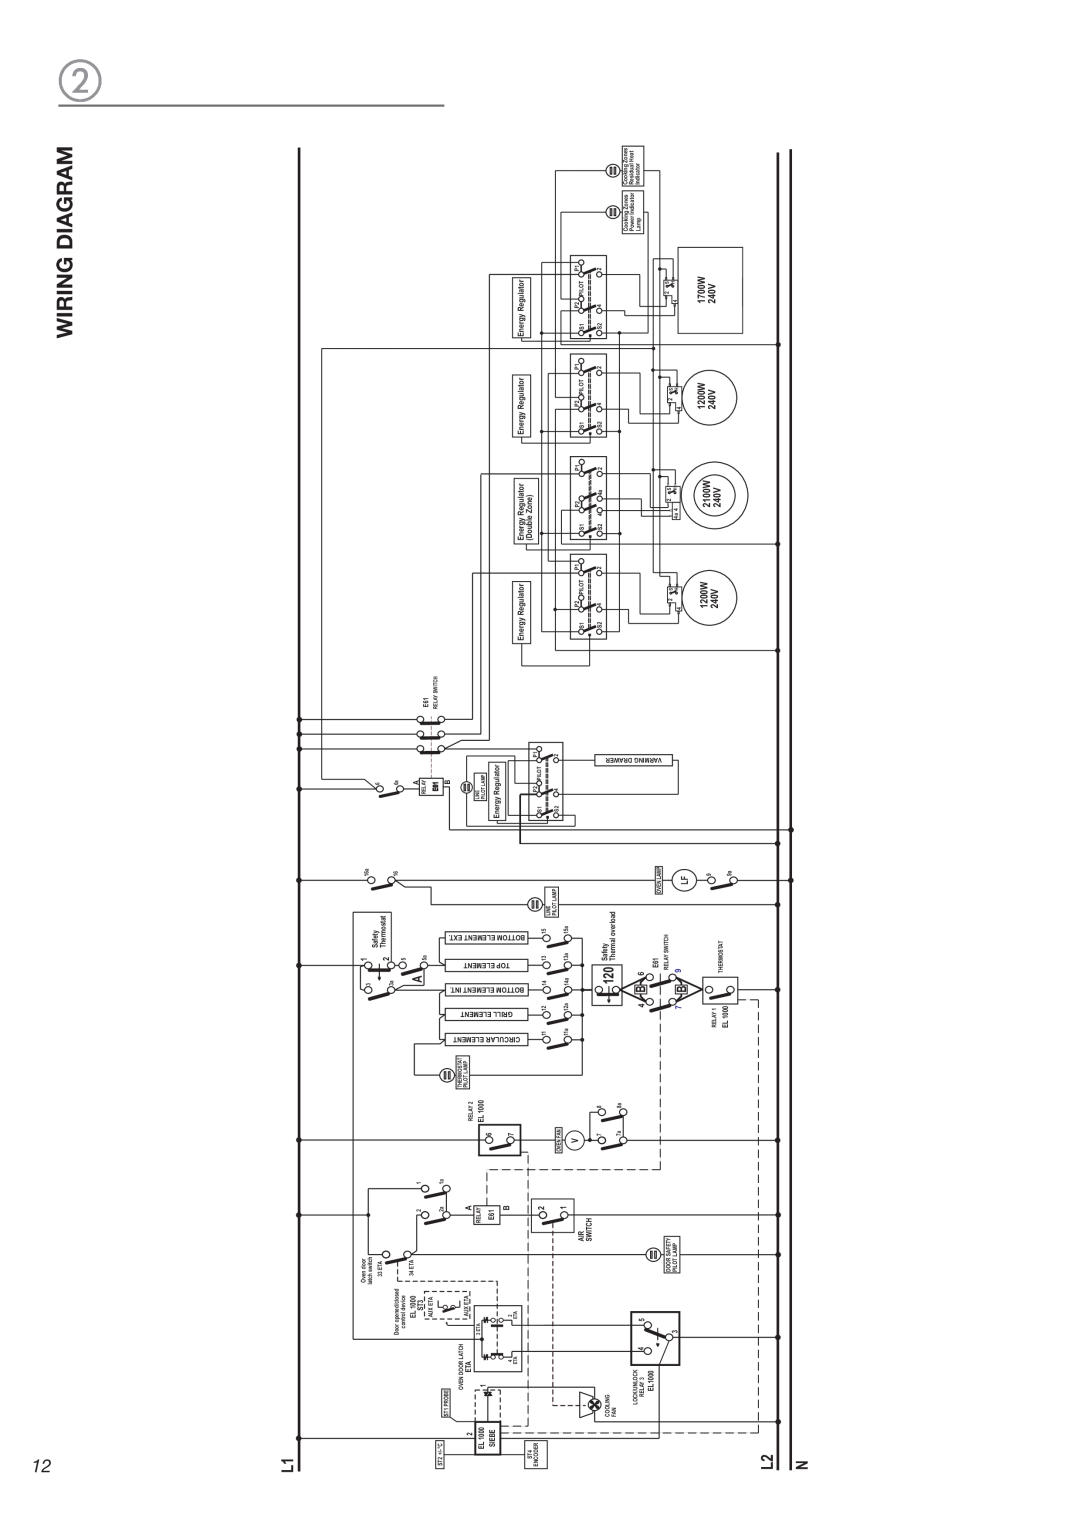 DeLonghi DEGLSC 24 SS warranty Wiring Diagram, 1200W, 1700W, 240V, 2100W, Energy Regulator, Double Zone 